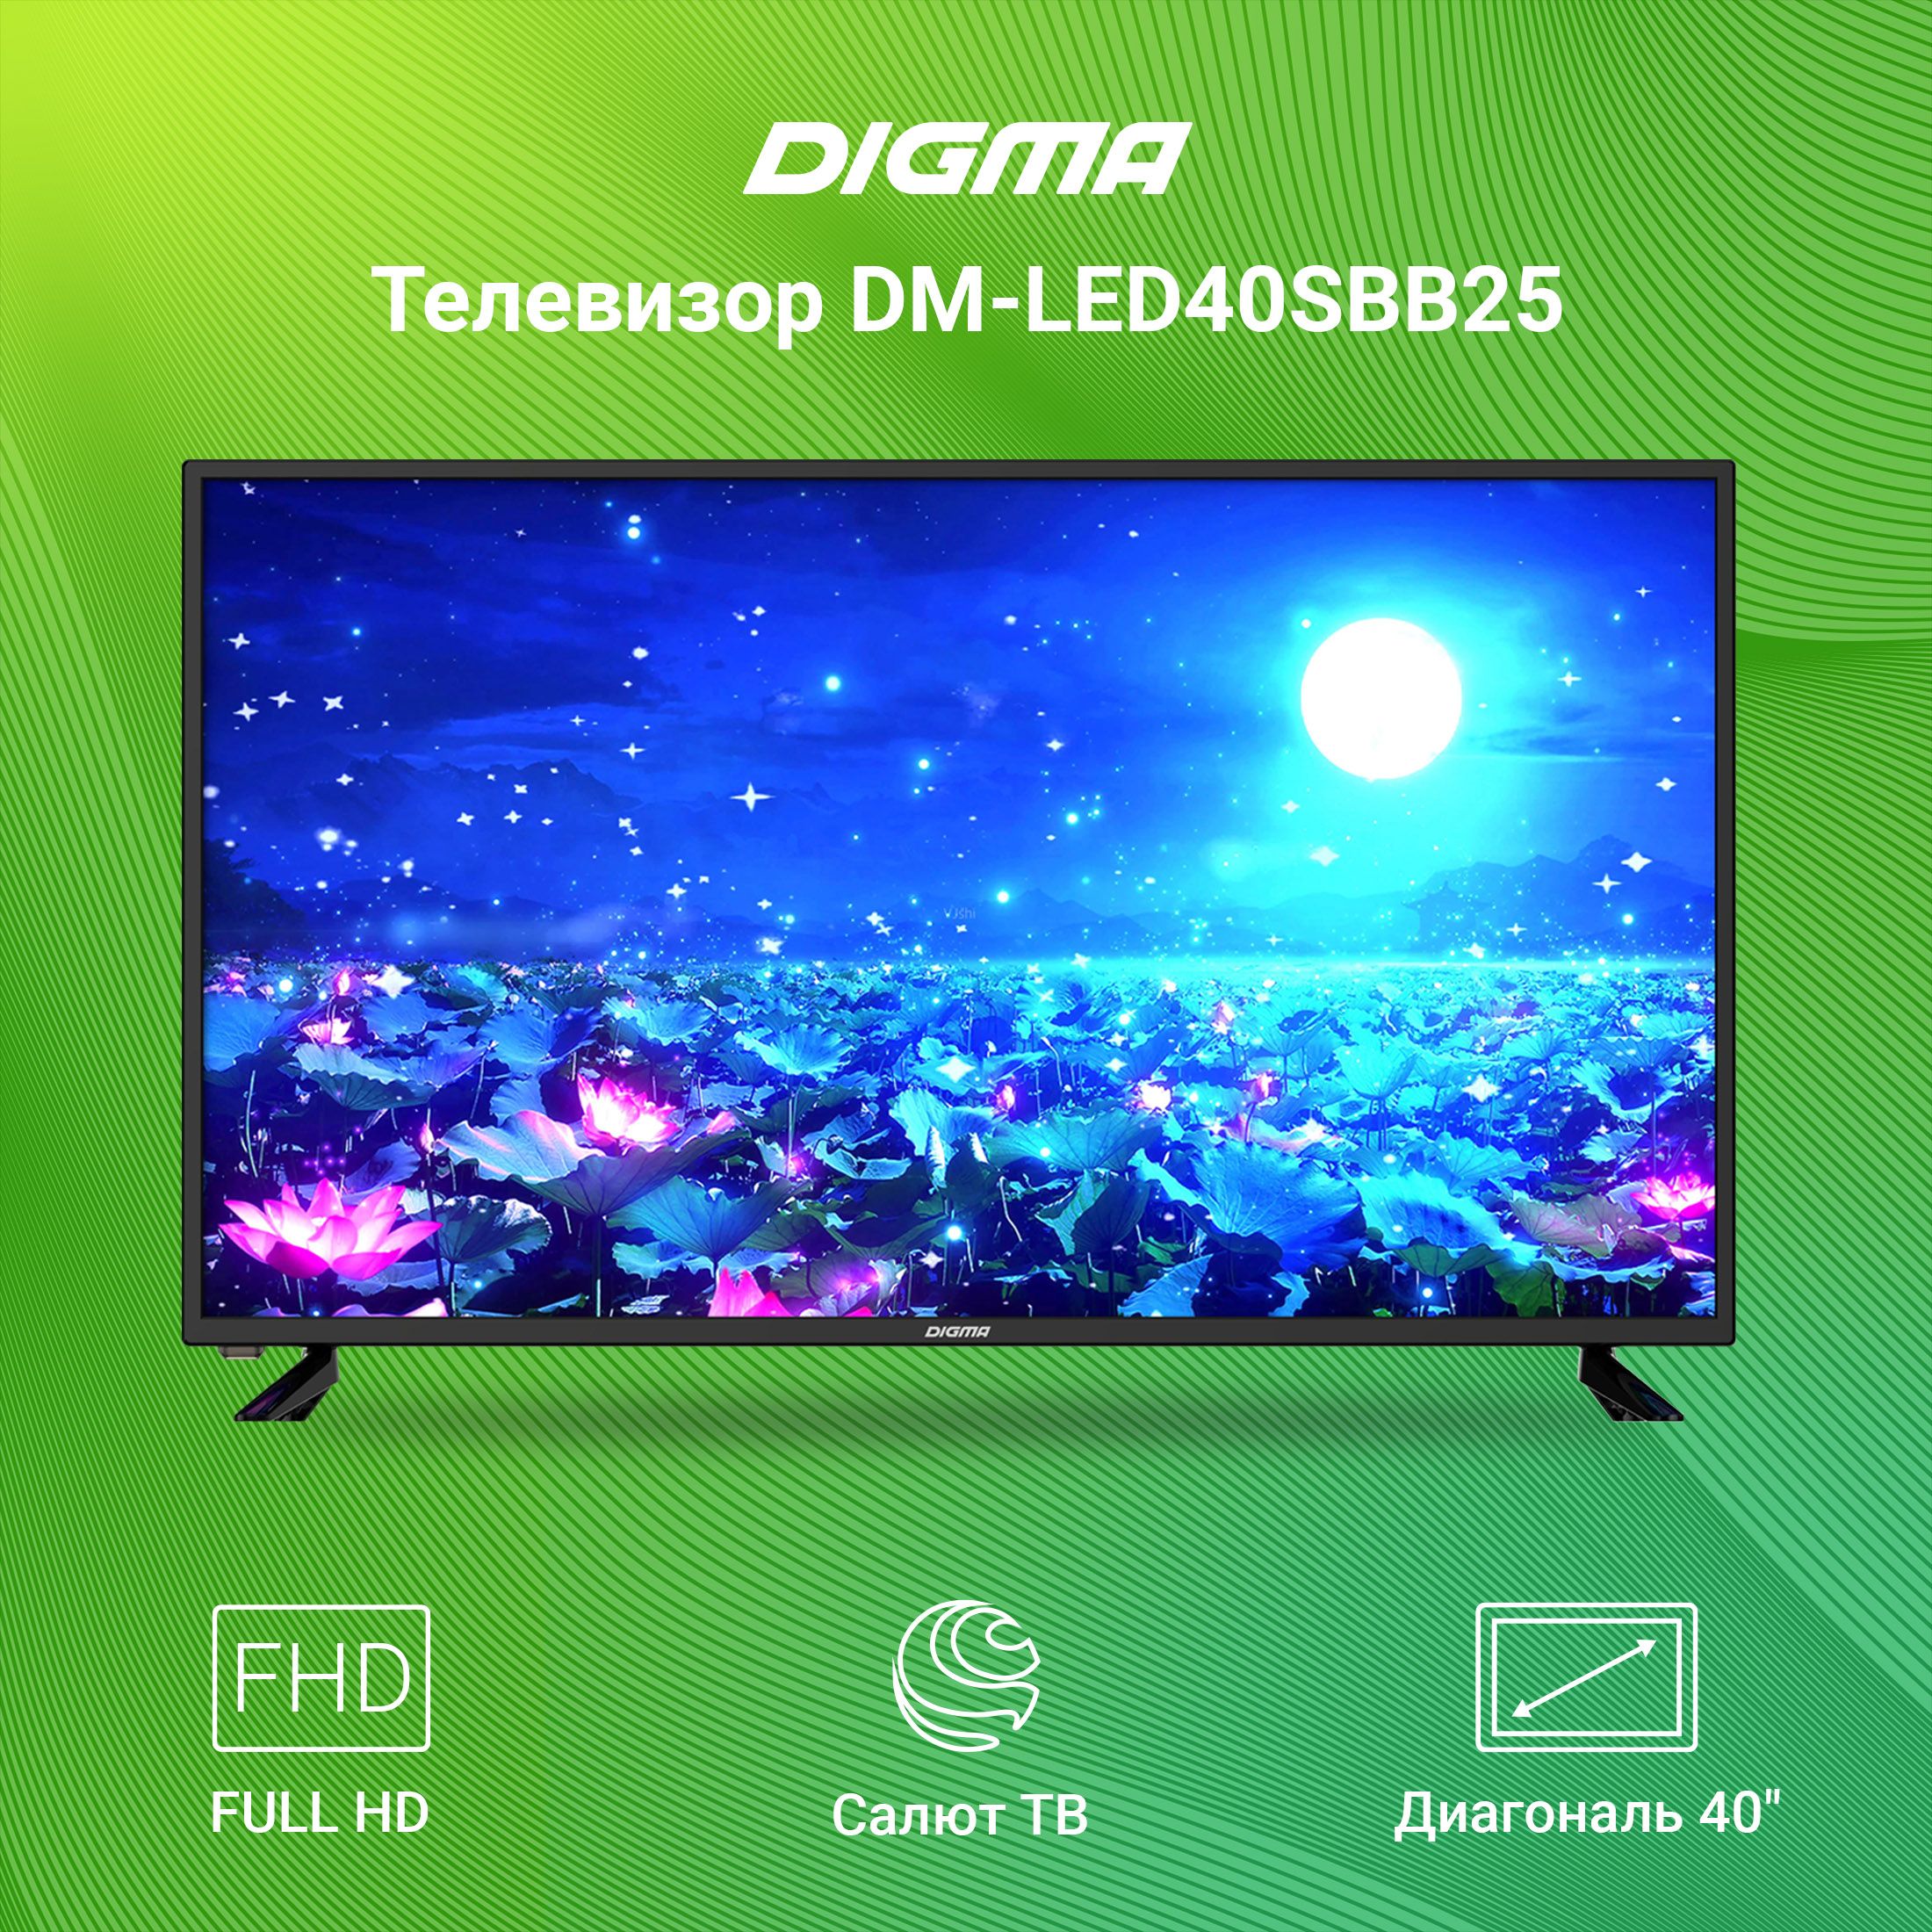 Телевизоры digma смарт тв. Телевизор led Digma DM-led40sbb25 FHD Smart. Digma DM-led40sbb25 led. Digma 32sbb25. Телевизор Digma led 40" DM-led40sbb25 Smart салют ТВ черный.